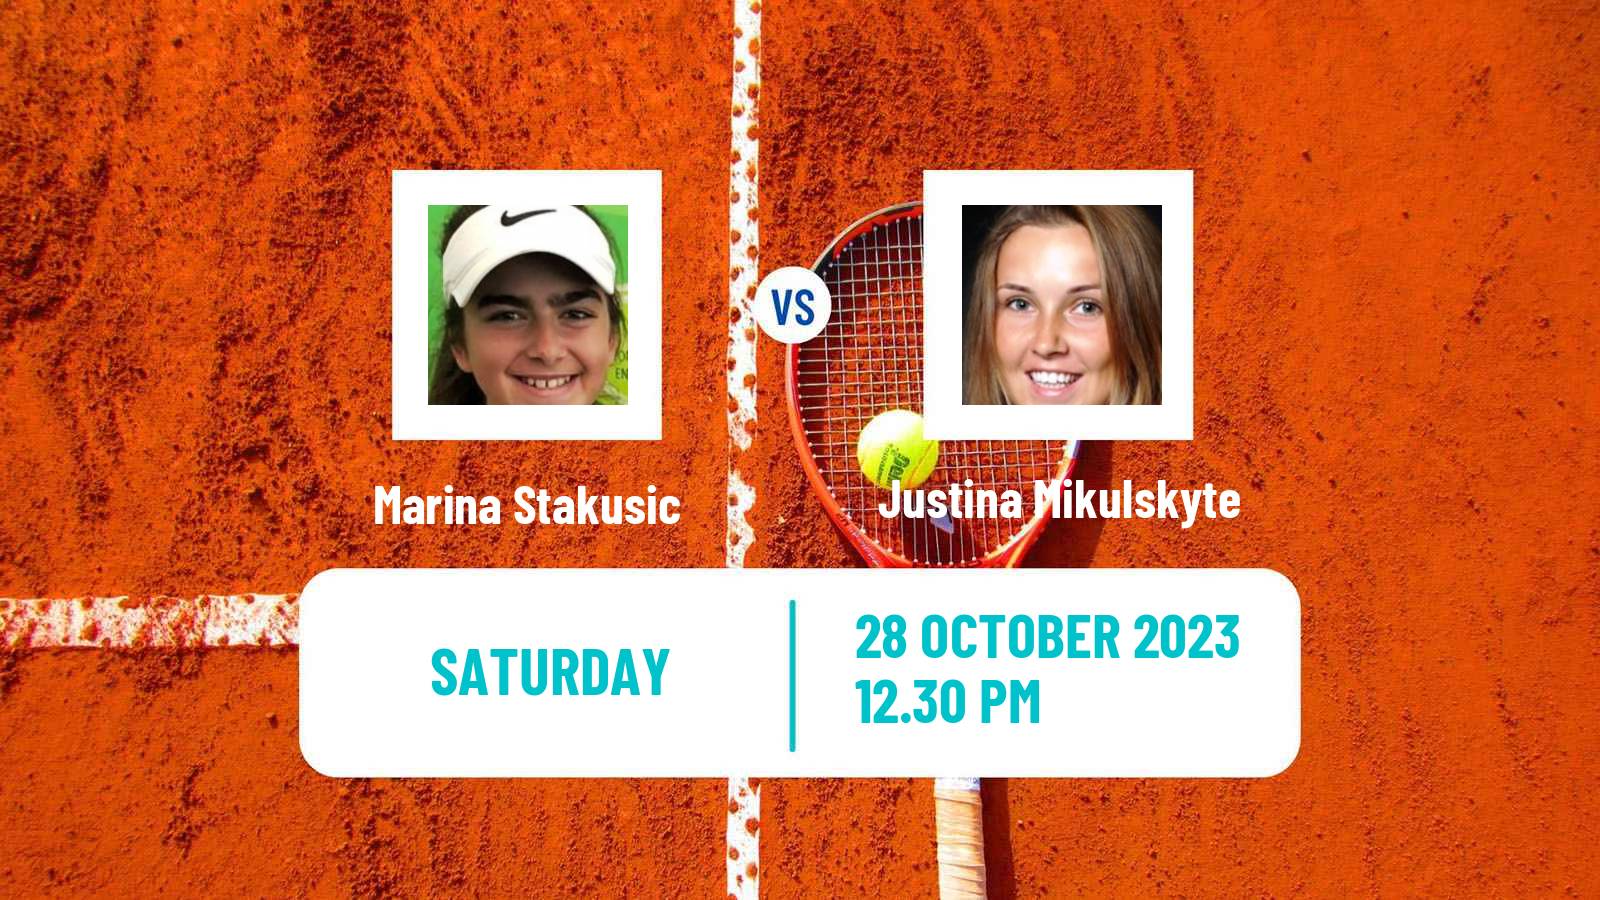 Tennis ITF W60 Toronto Women Marina Stakusic - Justina Mikulskyte